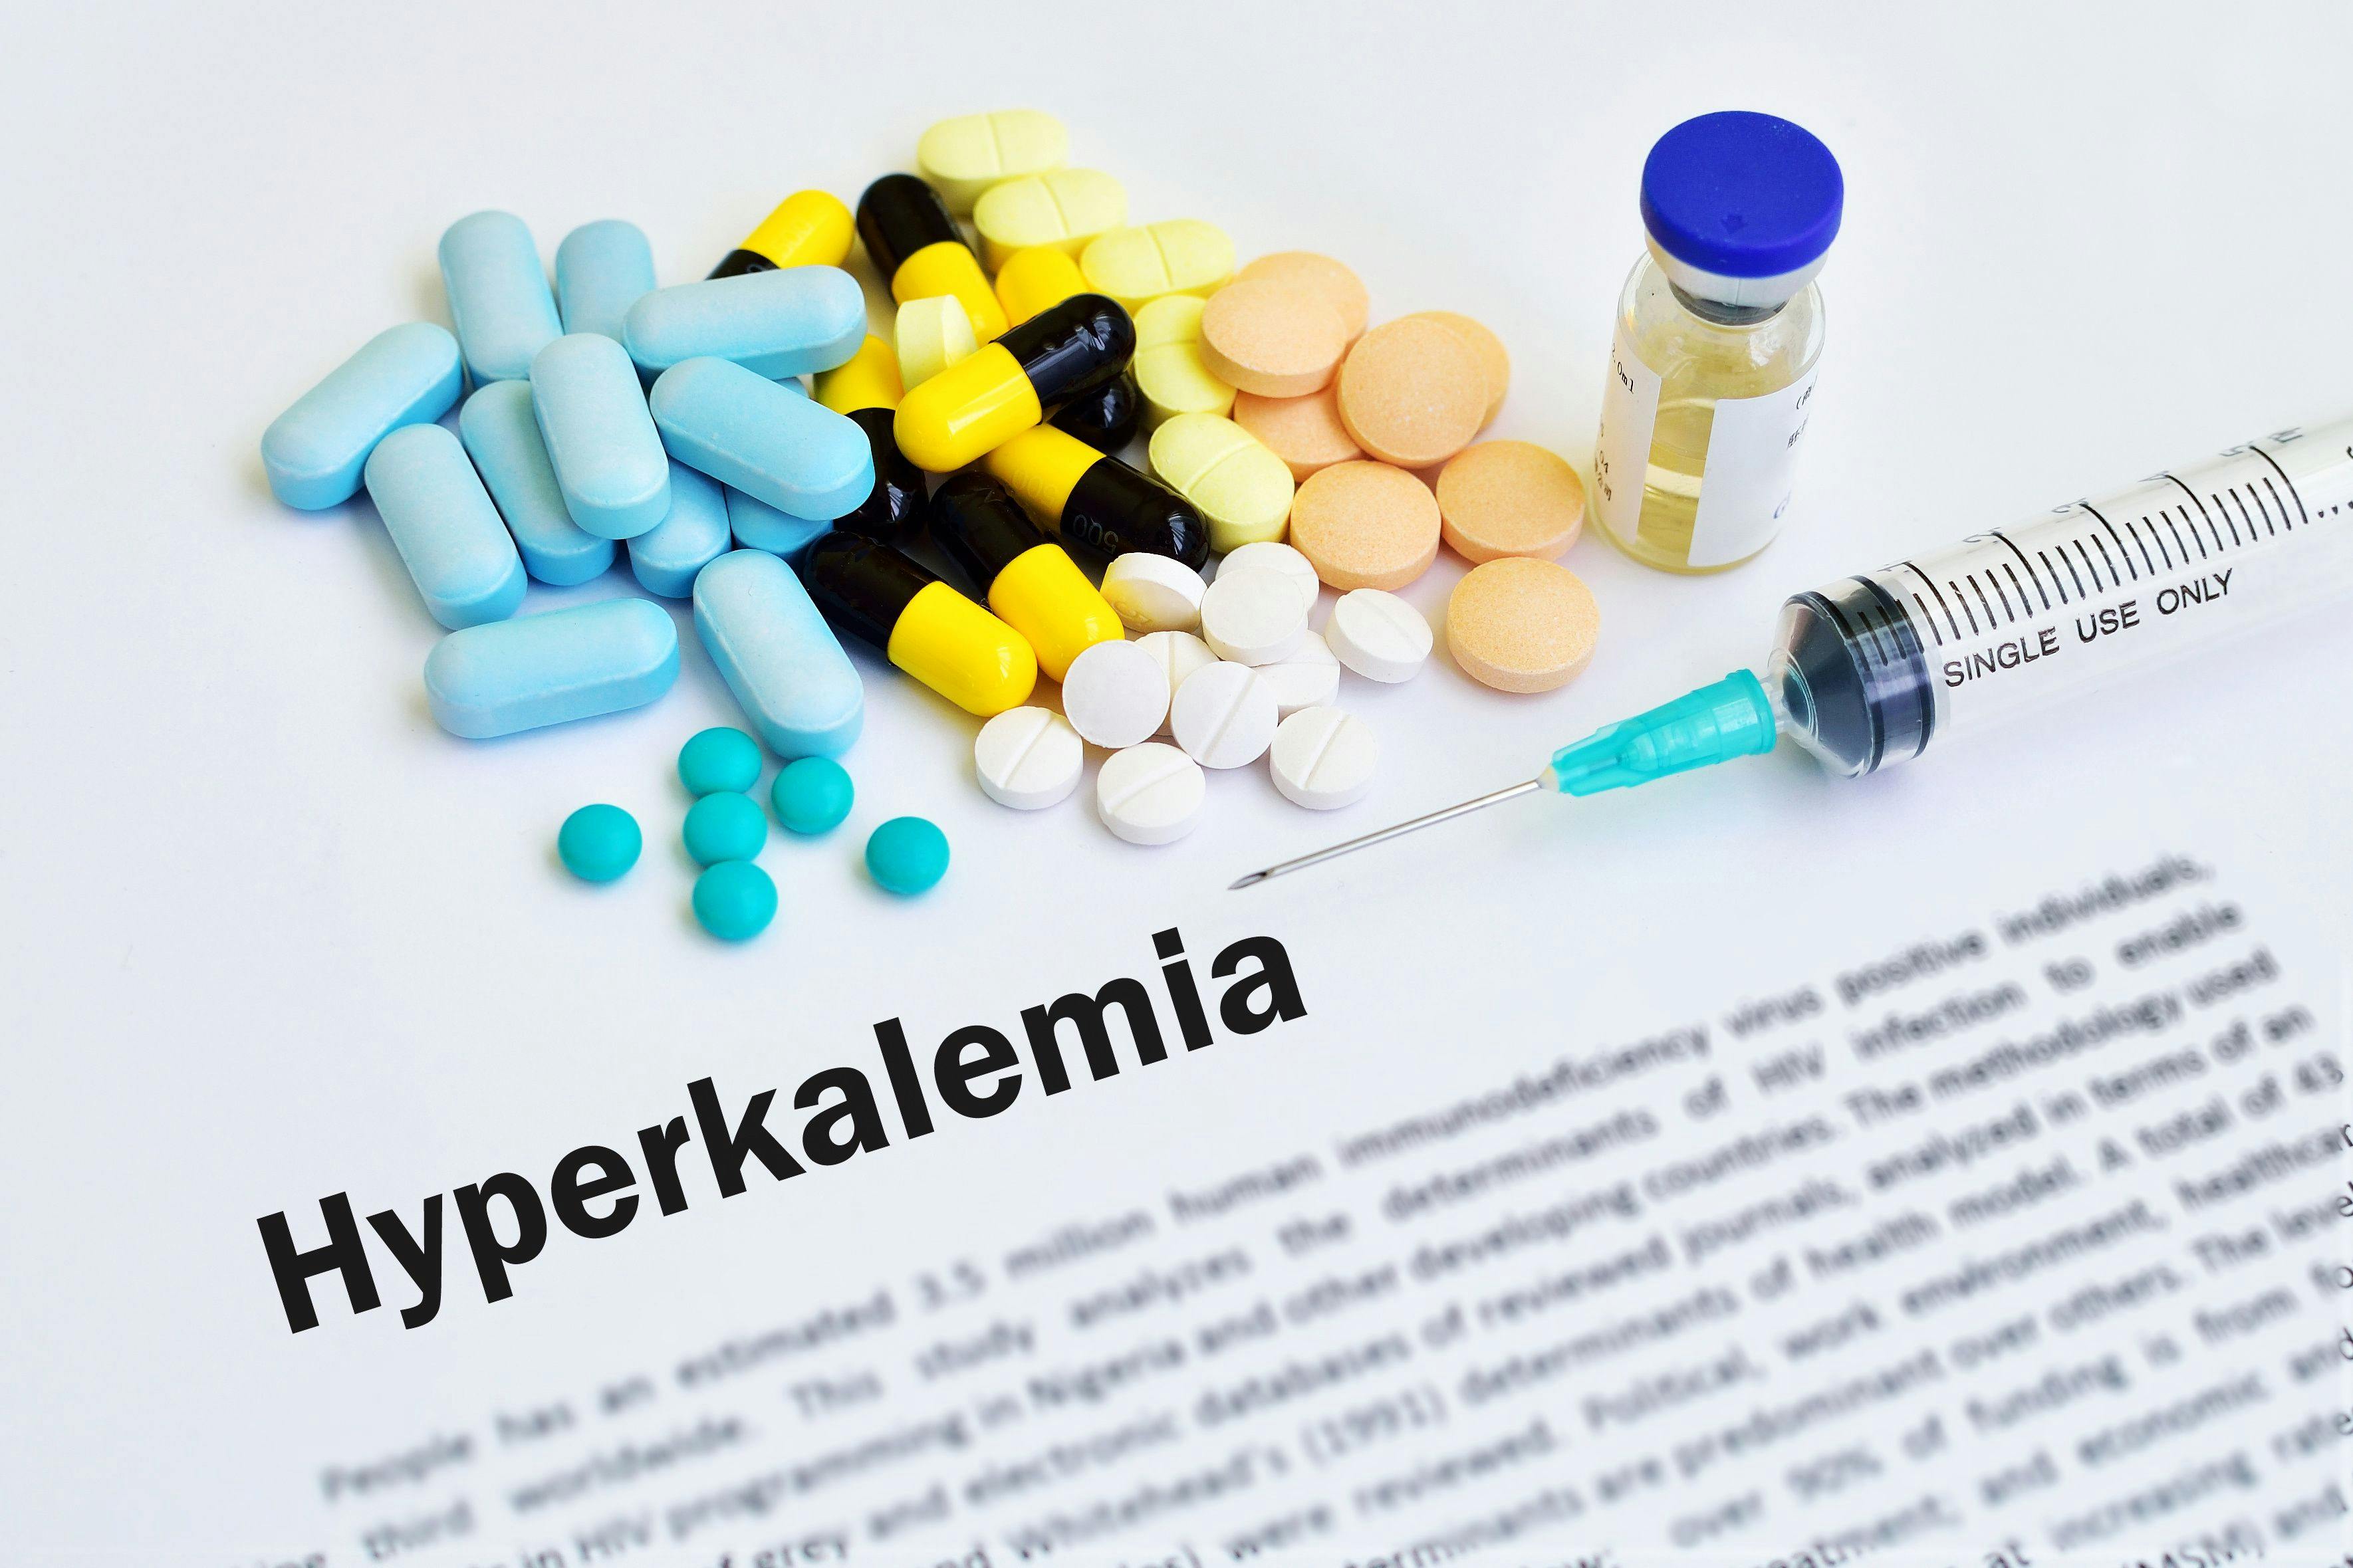 Drugs for hyperkalemia treatment